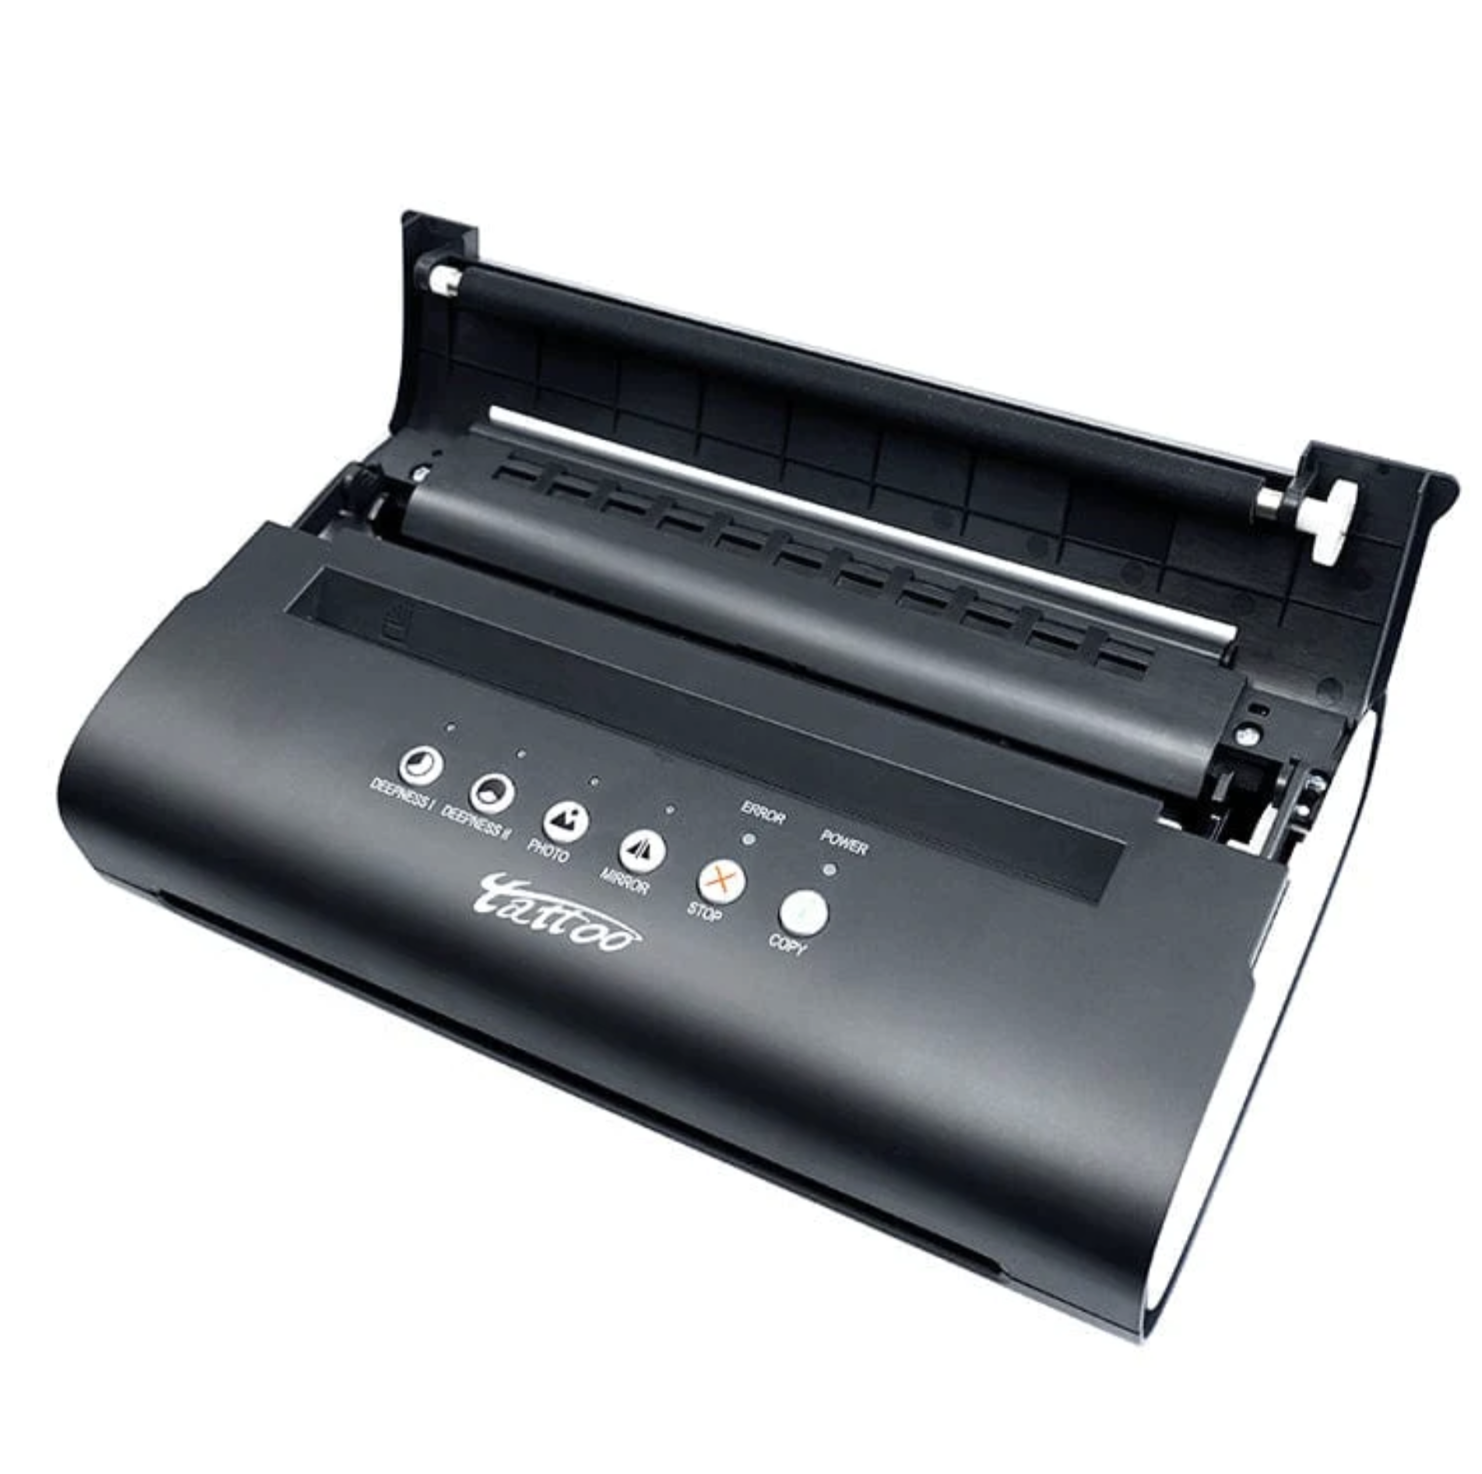 Tattoo Stencil Printer Transfer/Thermal Printer Tattoo Stencil Maker  Machine | eBay